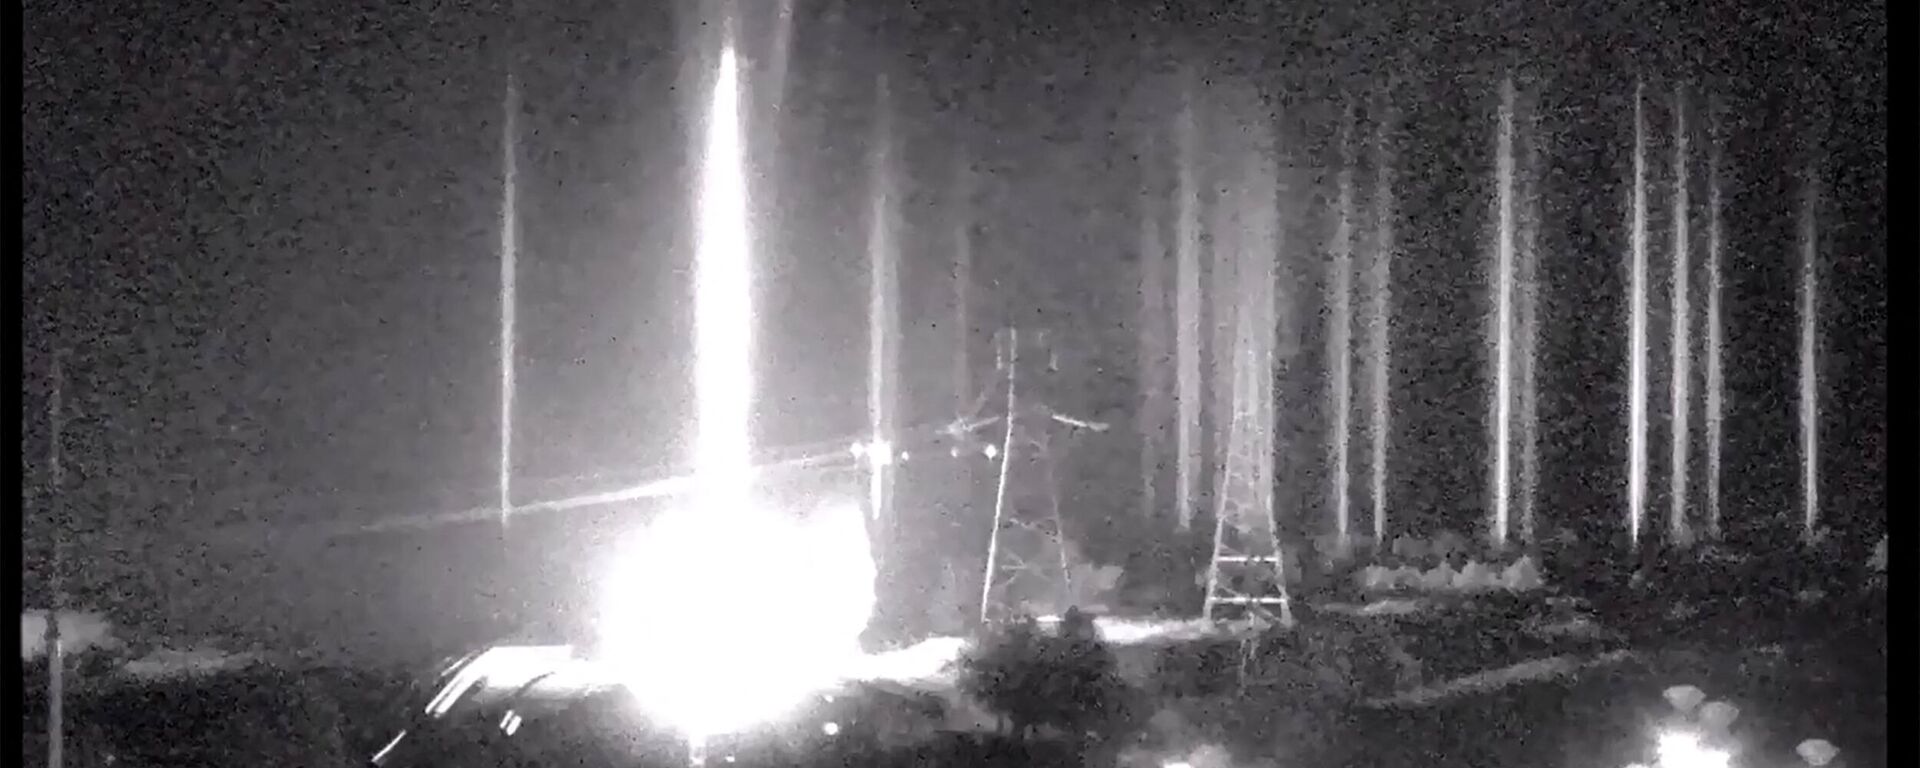 Фрагмент из видеозаписи, на которой изображены несколько взрывов на украинской атомной электростанции в Запорожье - Sputnik Грузия, 1920, 04.03.2022